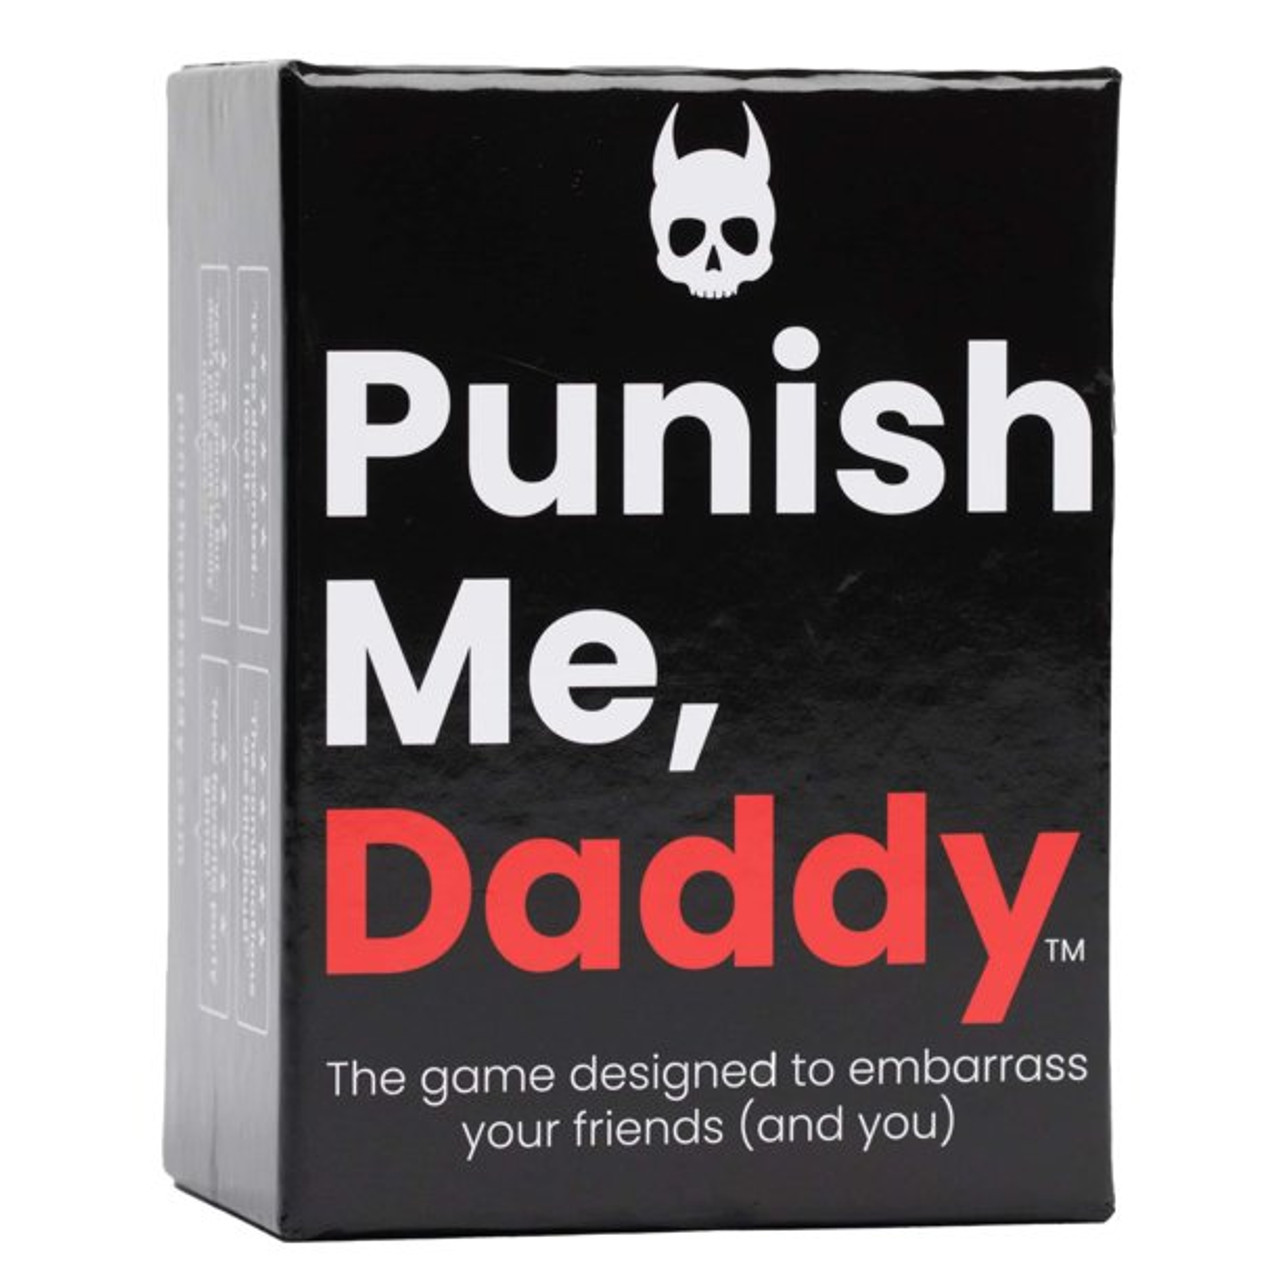 Punish Me Daddy Card Game Giga Bites Tabletop Cafe